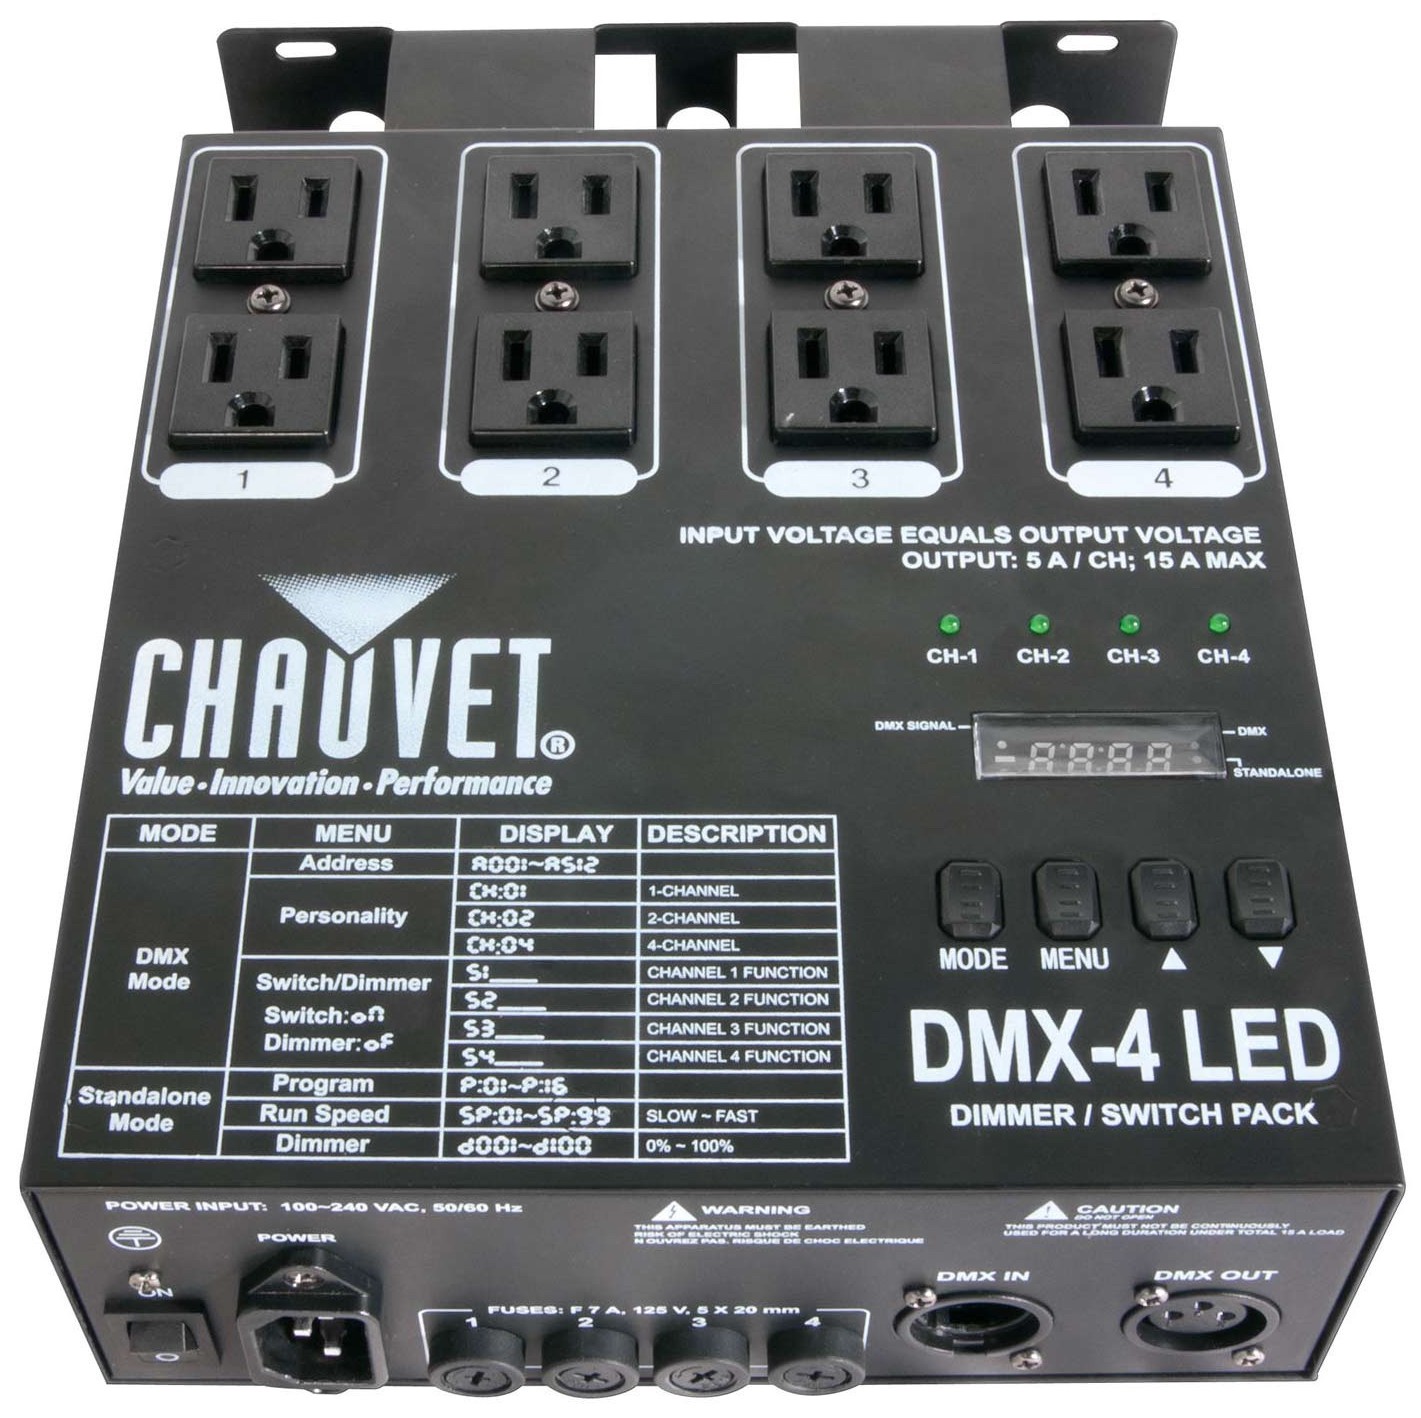 chauvet-dj-dmx-4-dimmer-pack.jpeg